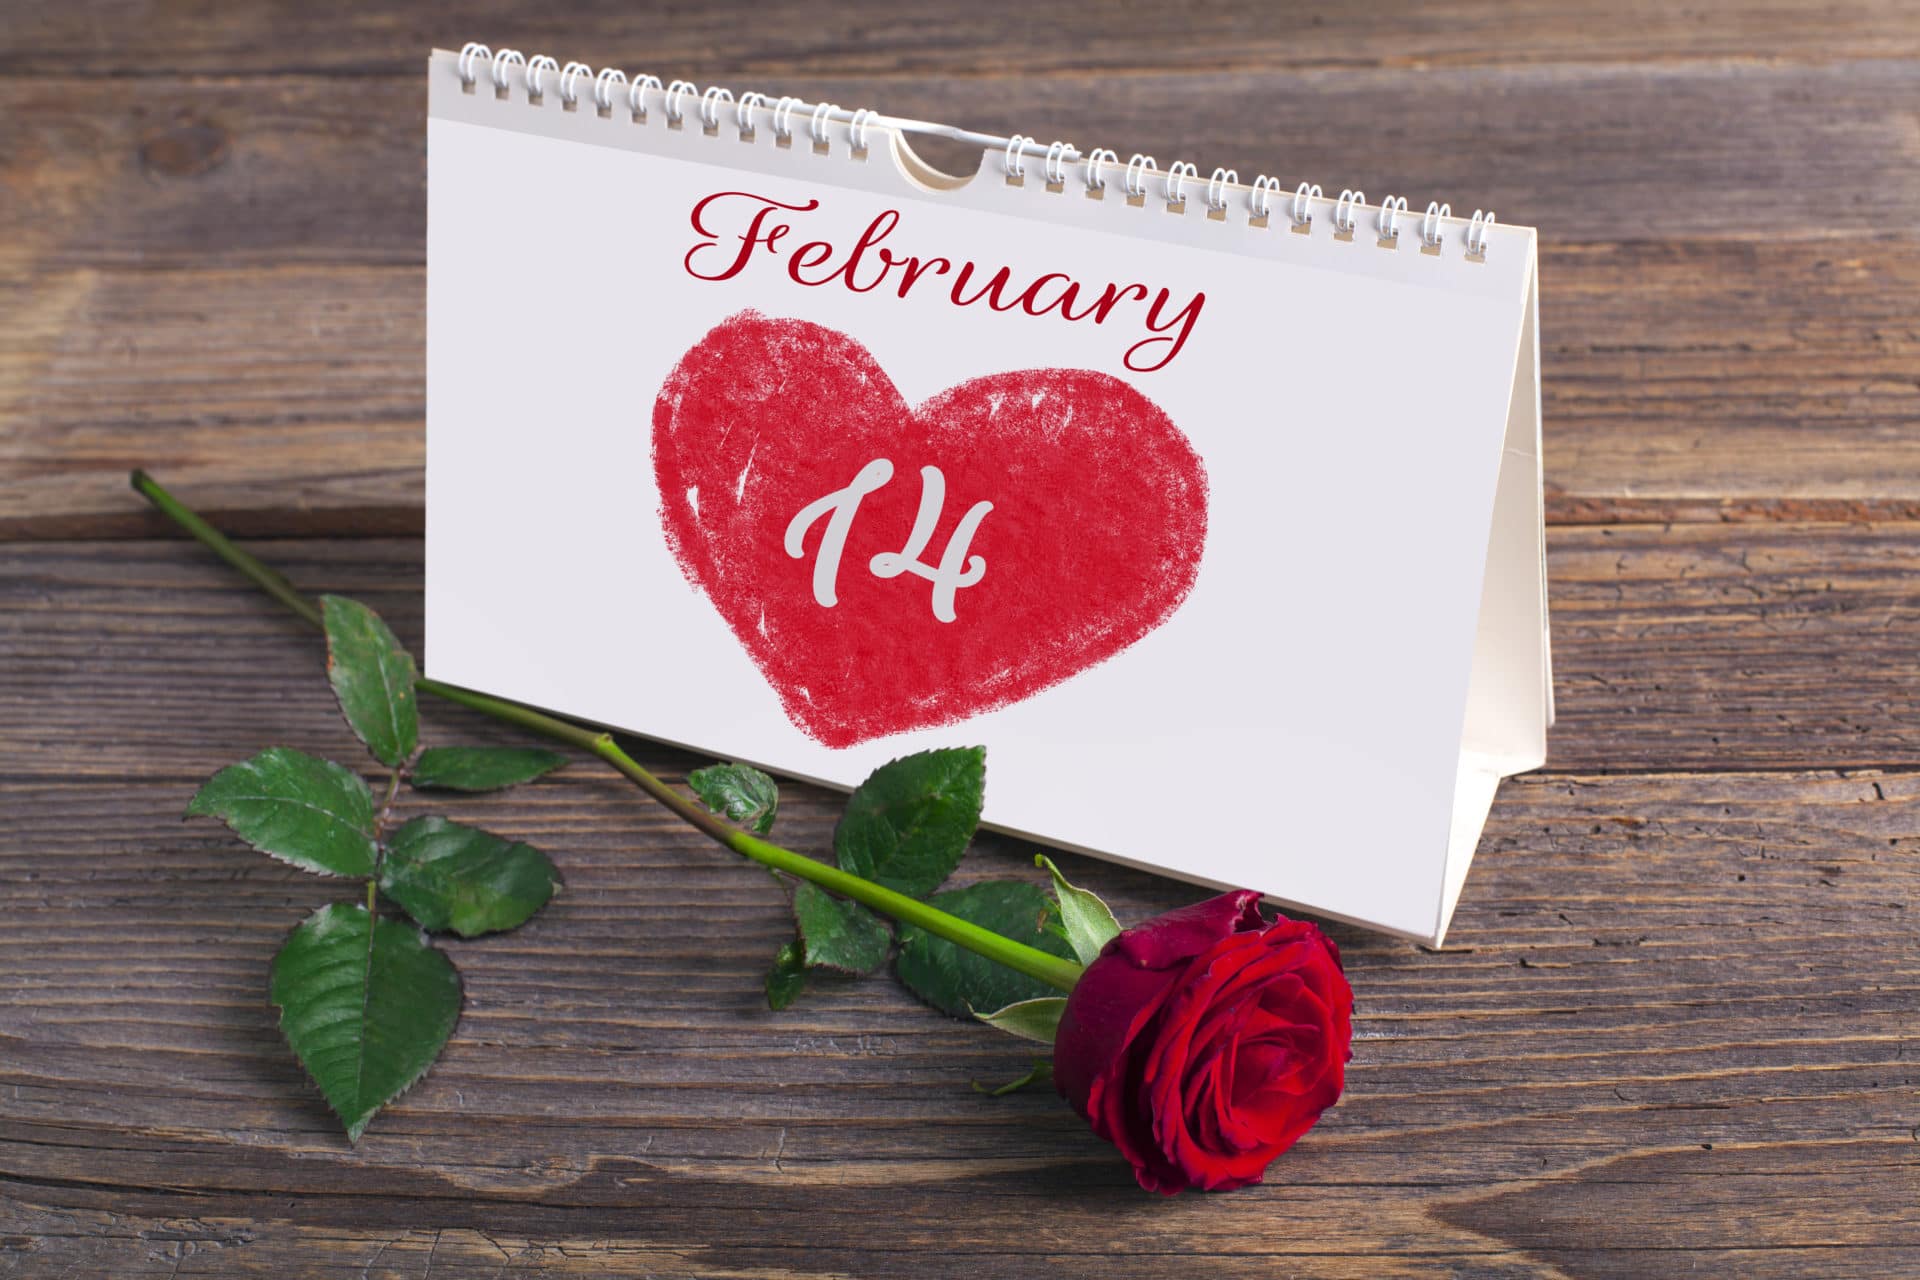 Frases para dedicar el 14 de febrero